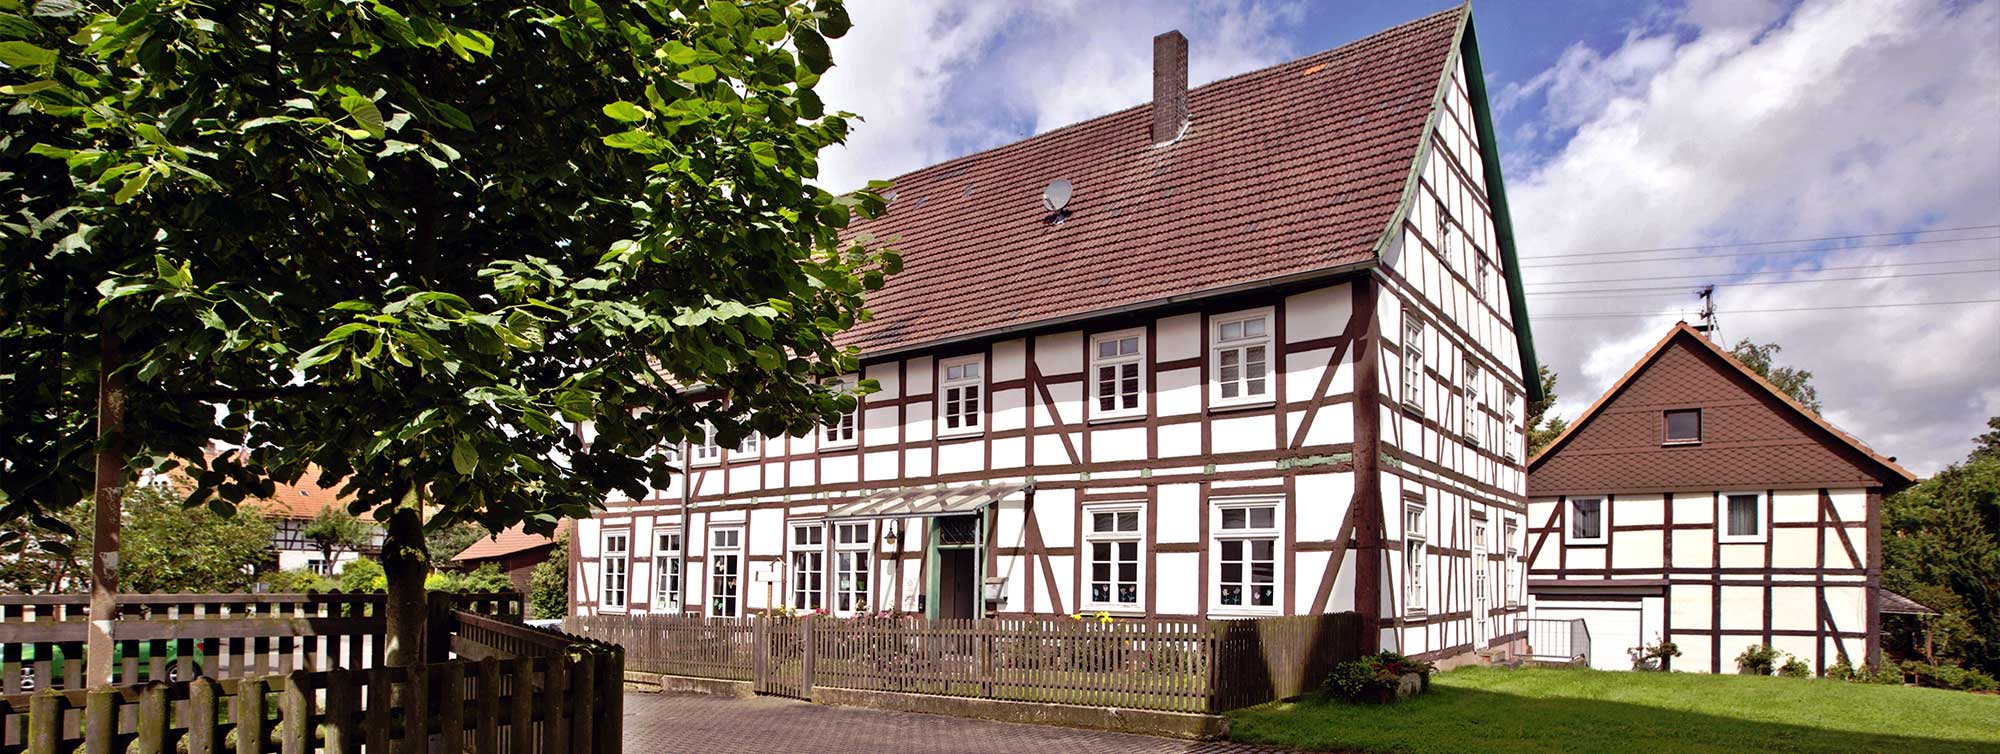 Aussnenansicht der Kindertagesstätte Twistetal - Mühlhausen